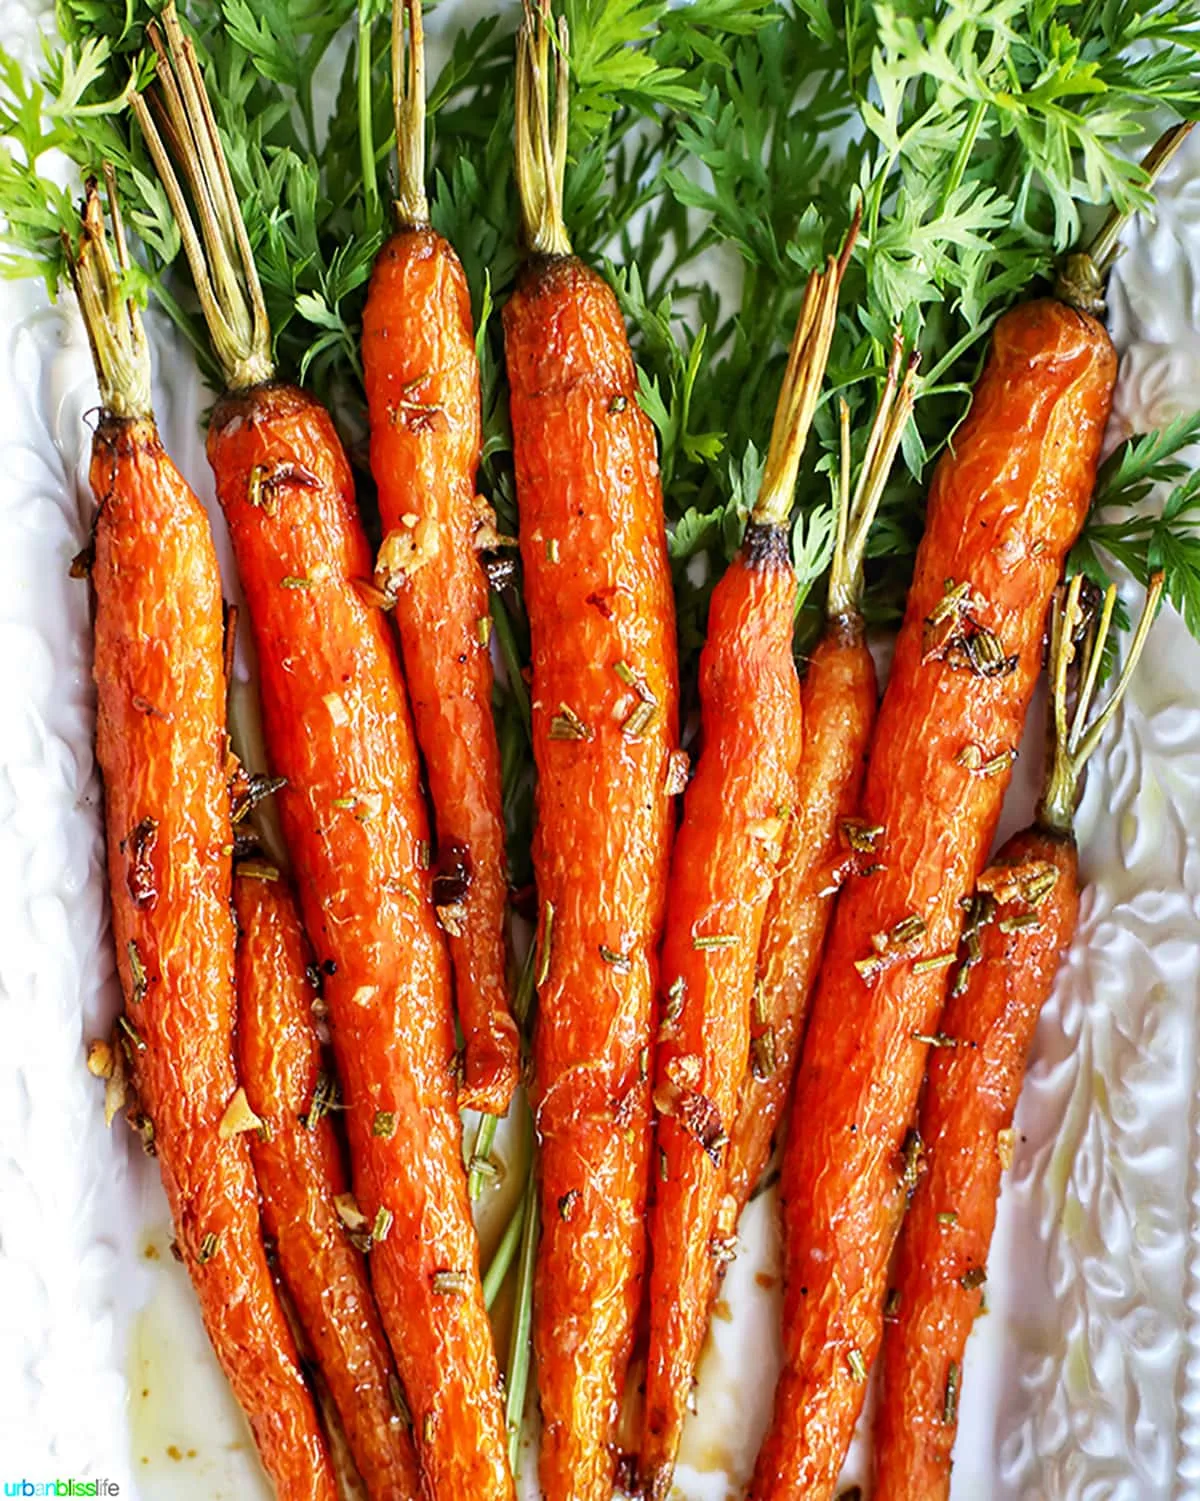 Garlic rosemary carrots roasted on platter